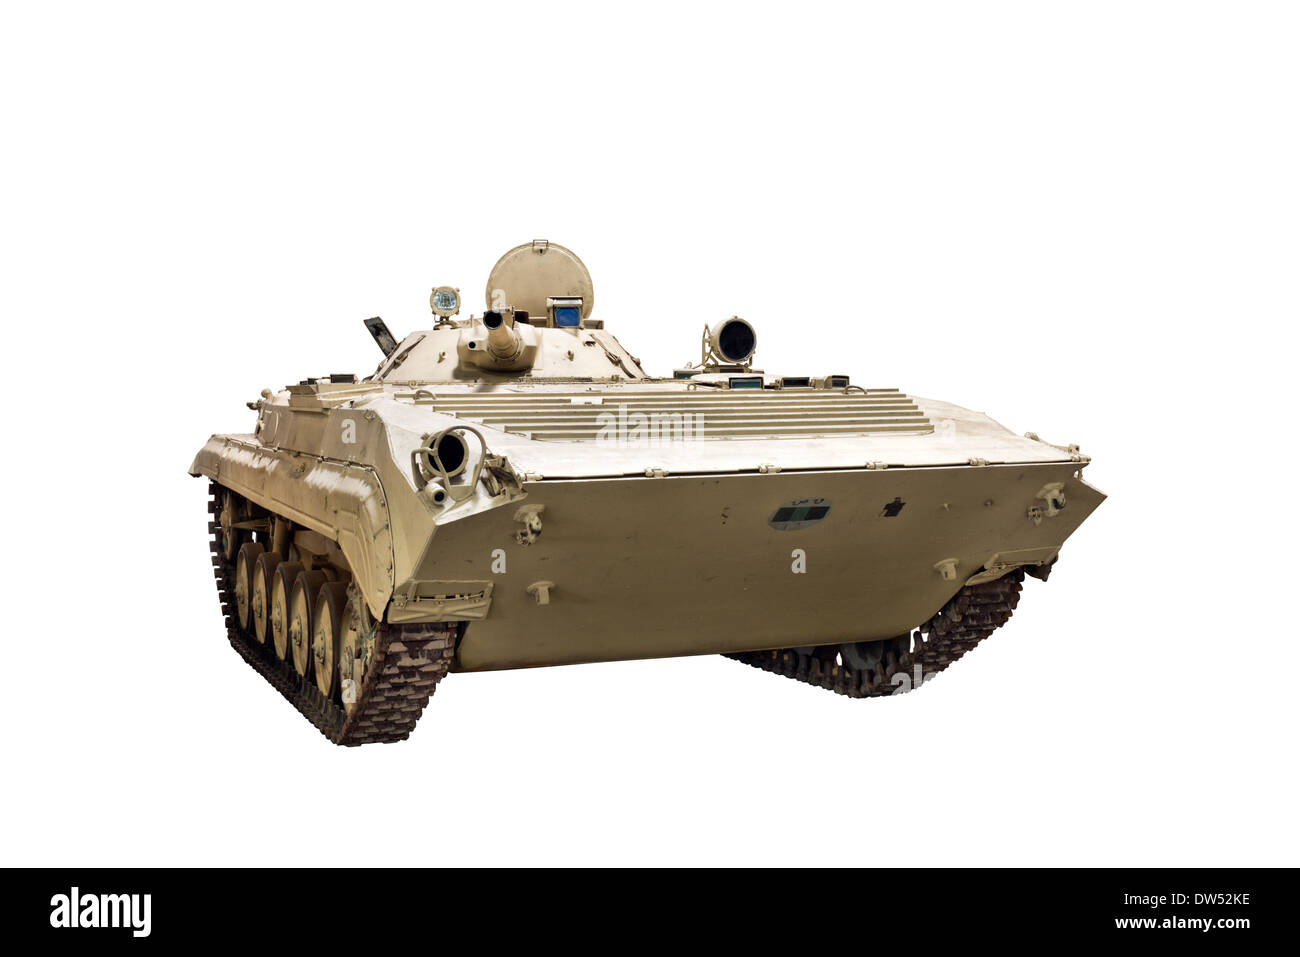 Une coupe d'un BMP 1 chenilles soviétique de combat d'infanterie, un croisement entre un véhicule blindé et un char léger Banque D'Images